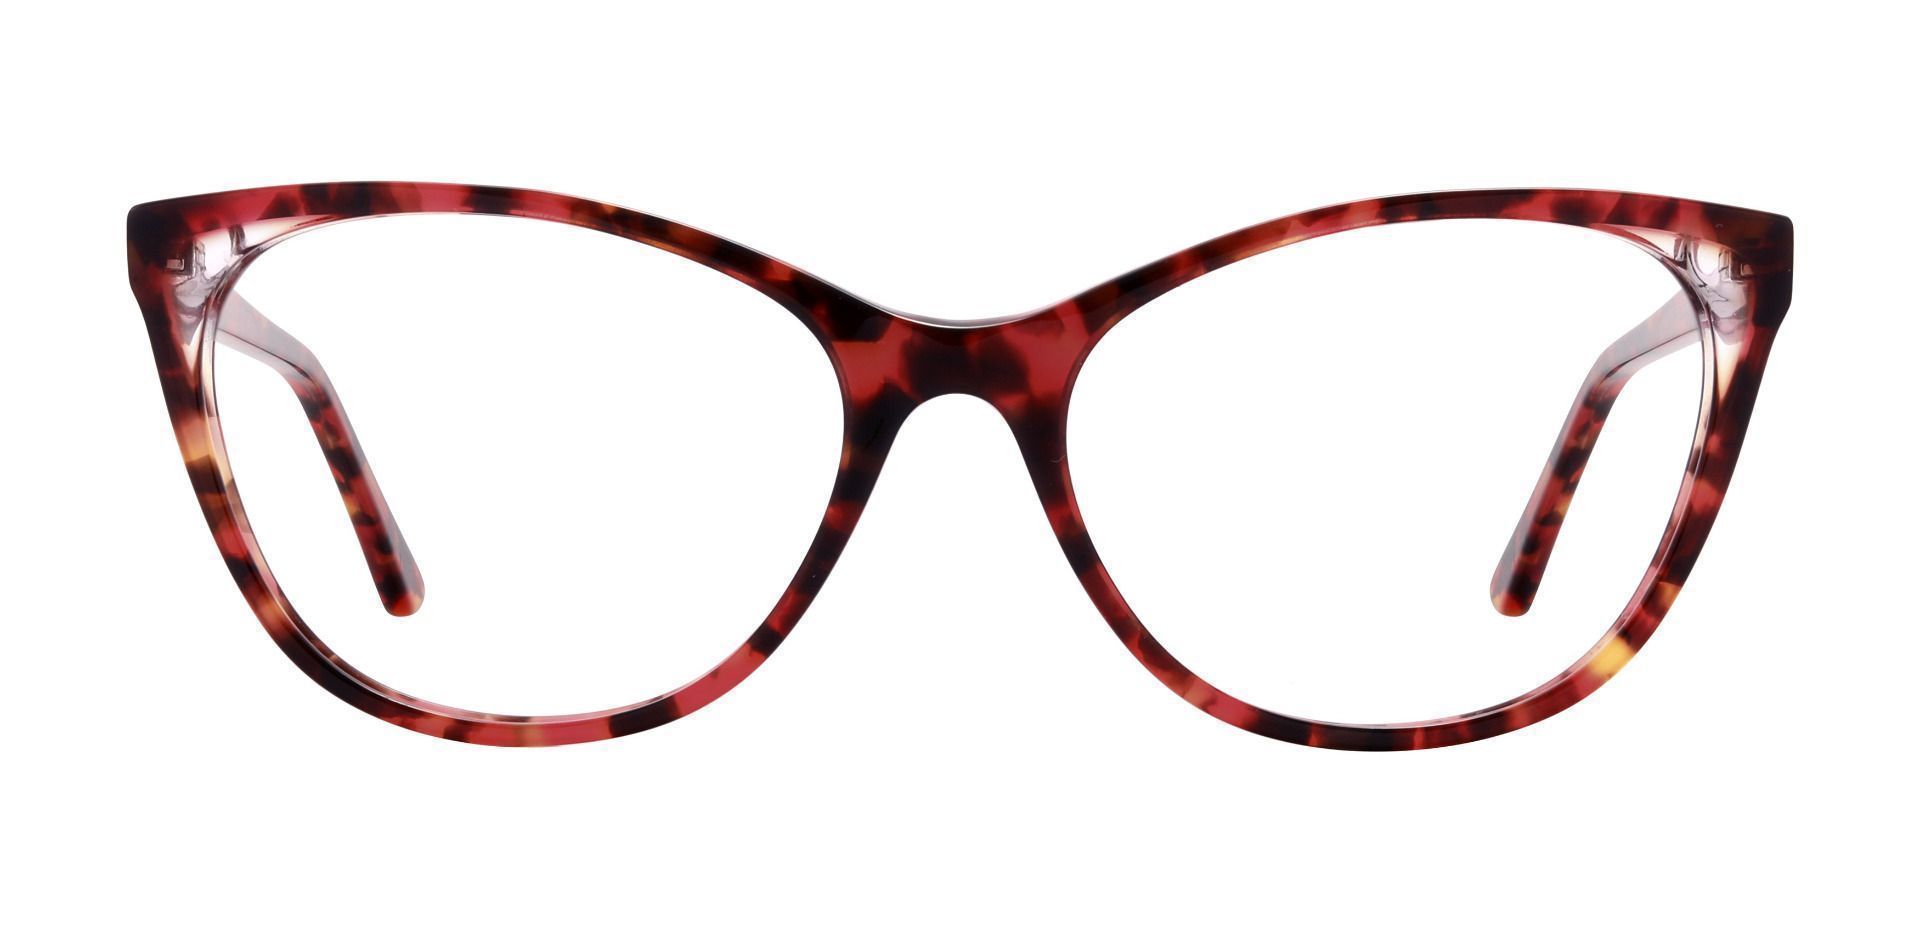 Huffman Cat Eye Prescription Glasses - Tortoise